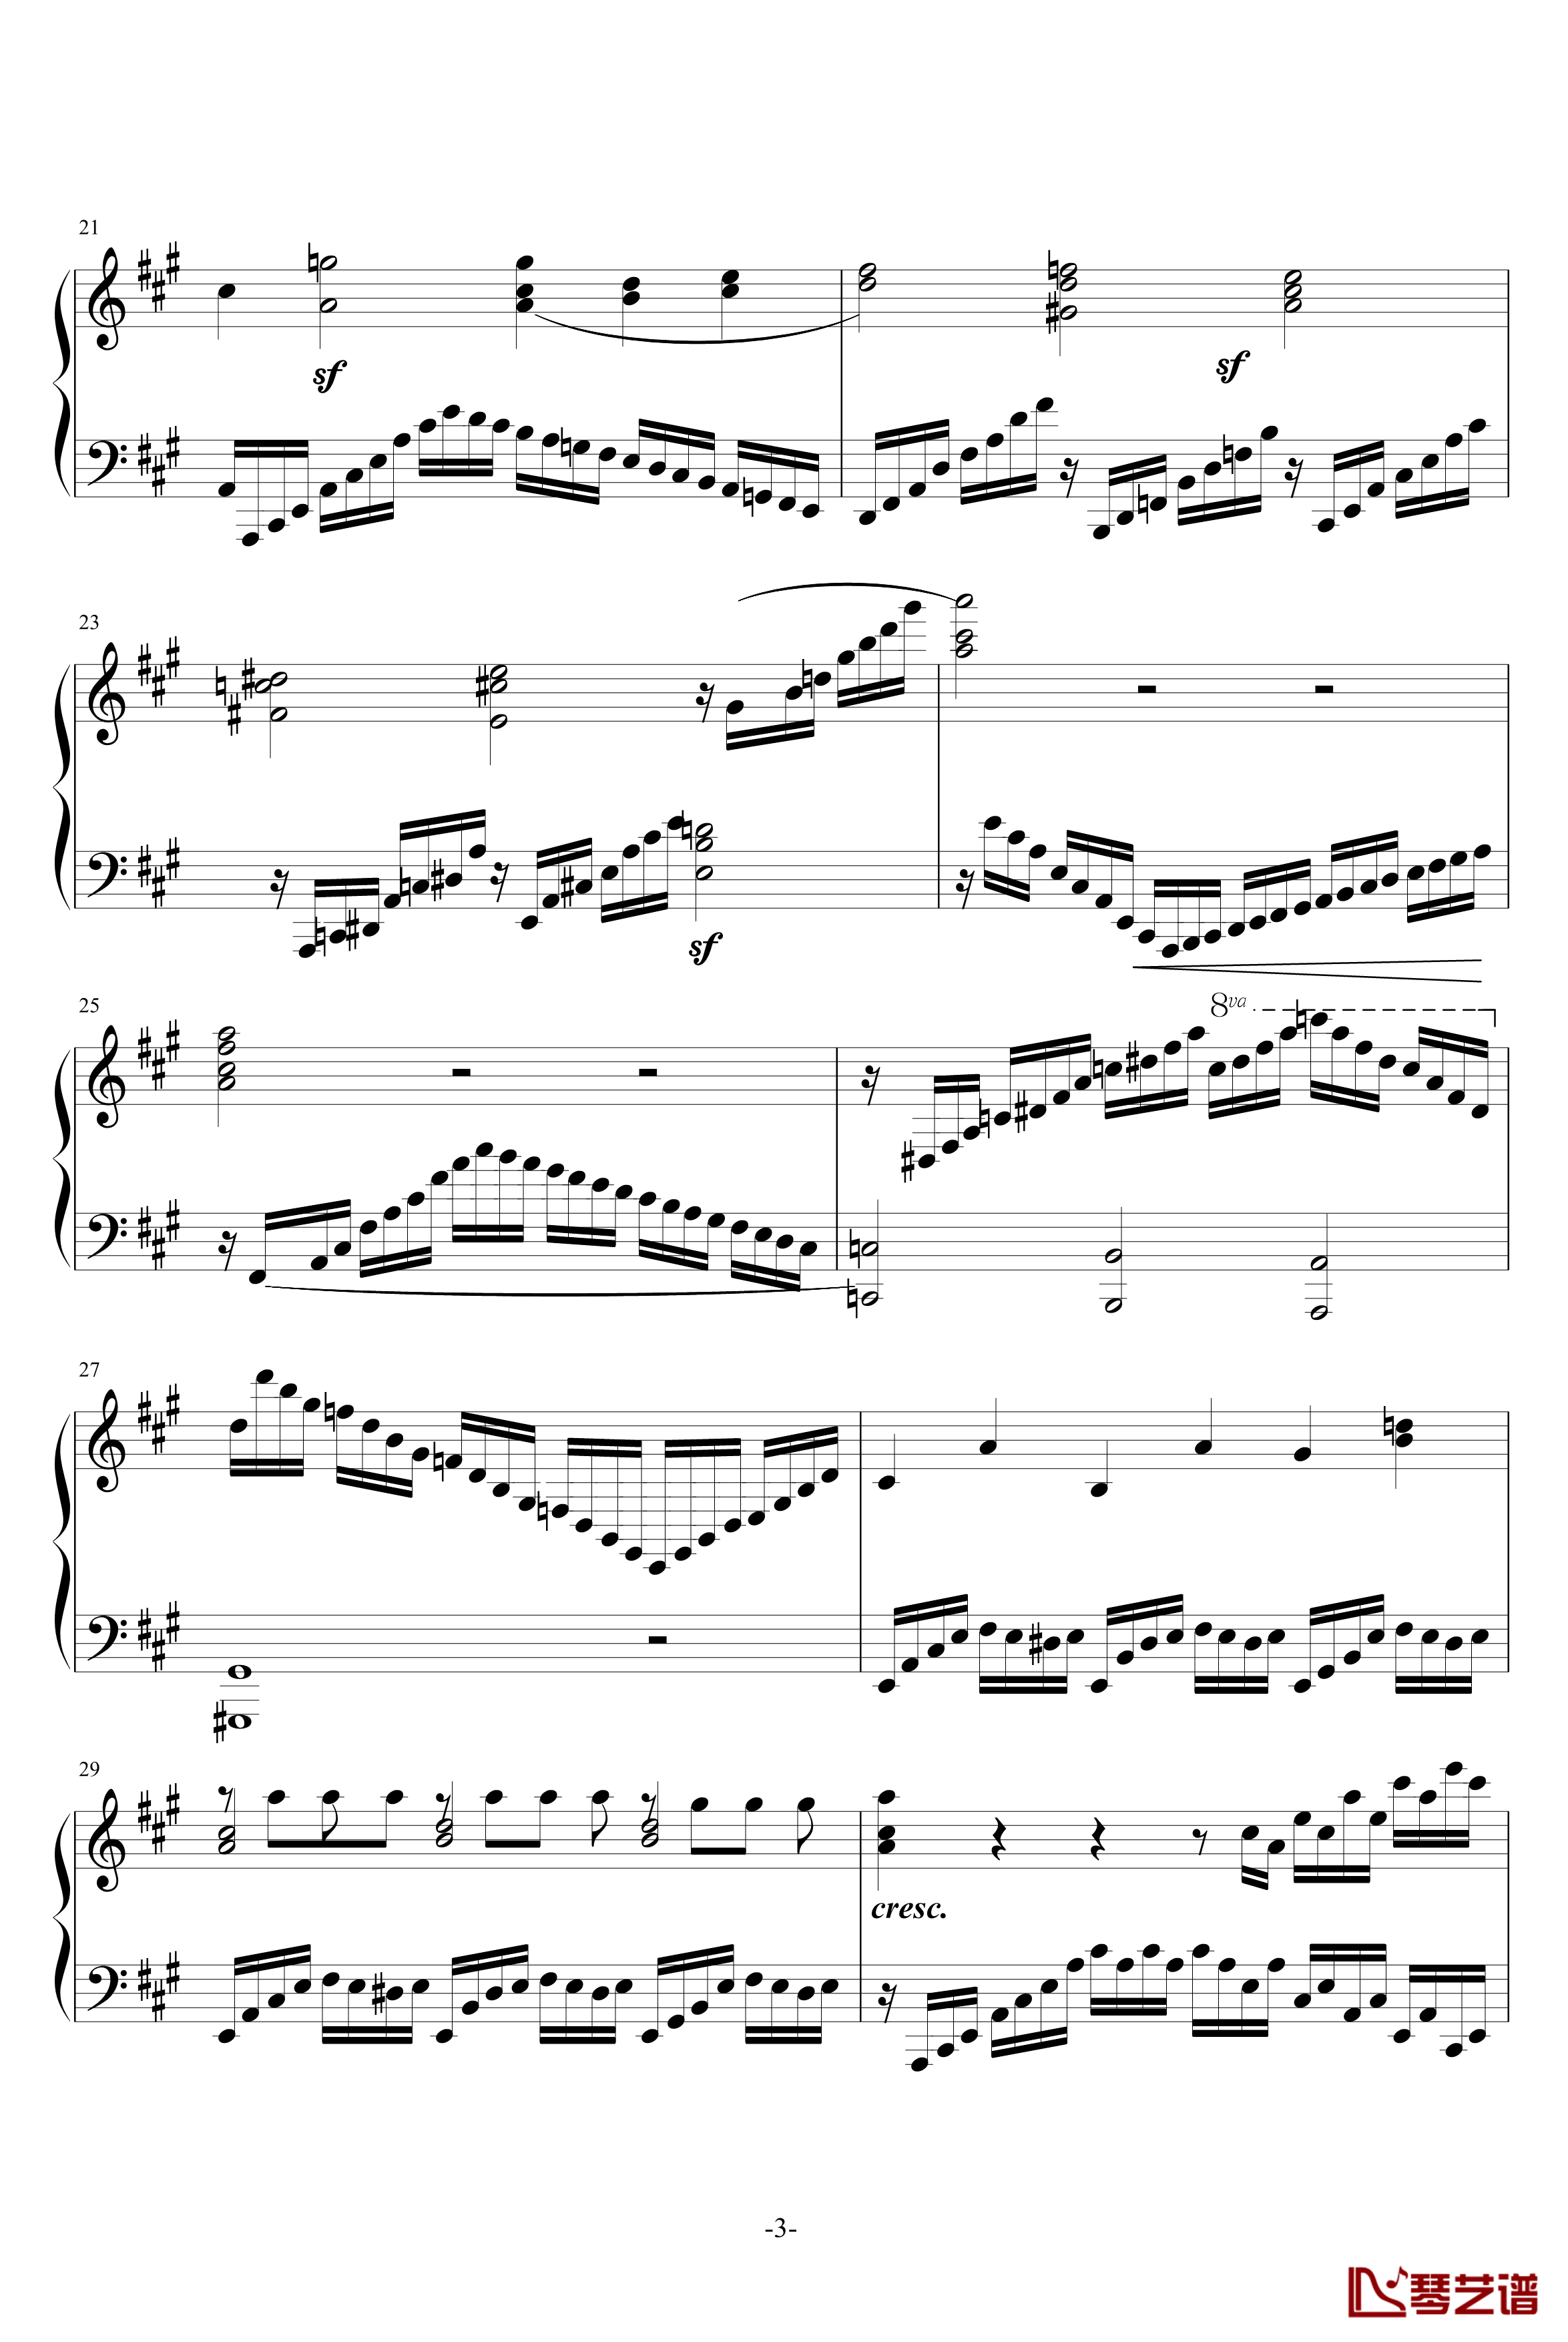 克列门蒂练习曲之第7首钢琴谱-克来门蒂3